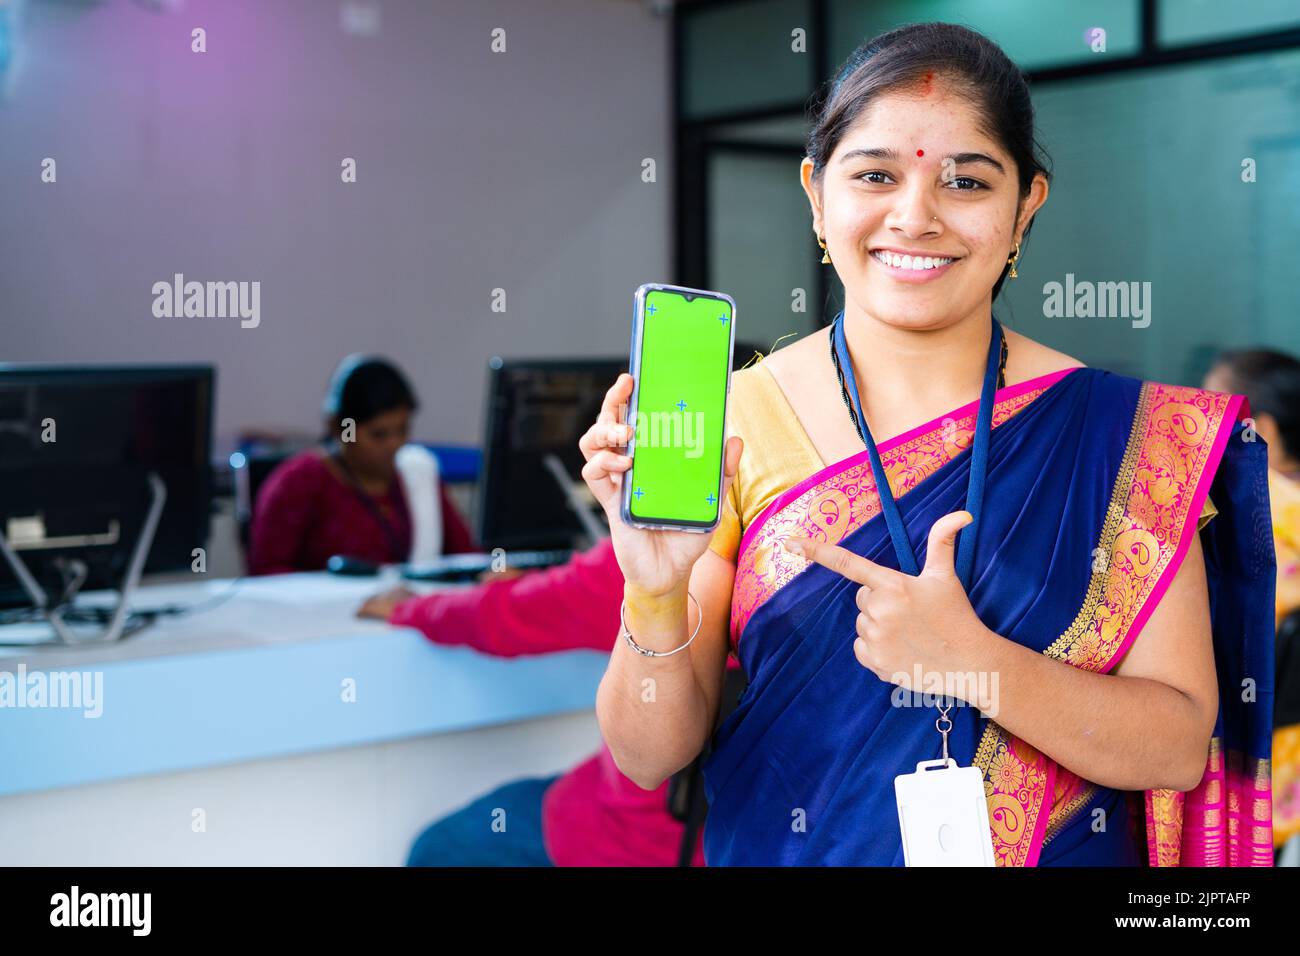 femme souriante de banque employé montrant l'écran vert téléphone mobile en pointant le doigt en regardant la caméra - concept de service financier en ligne Banque D'Images